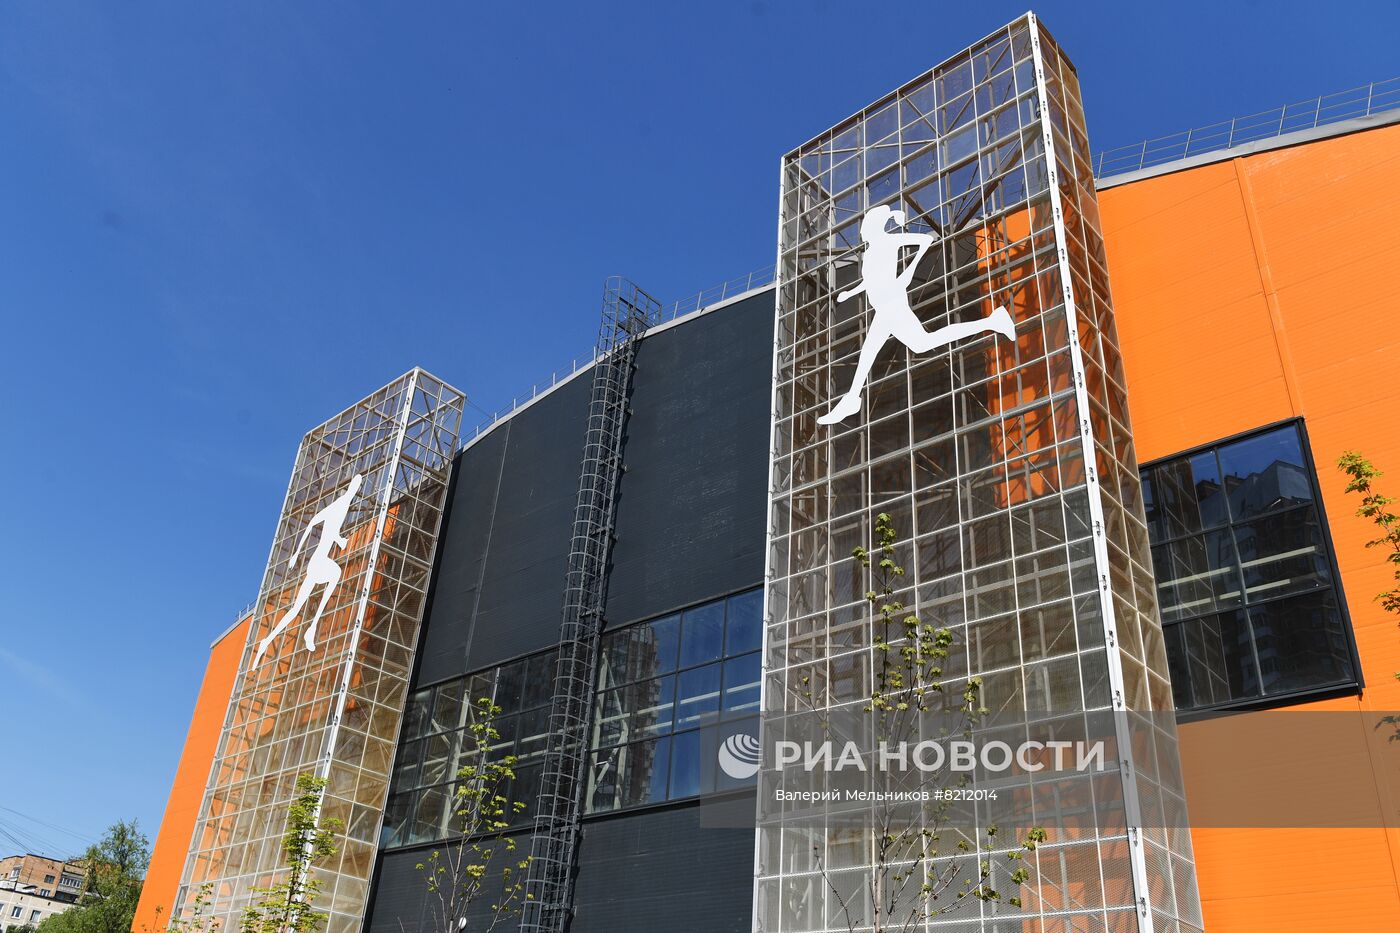 Строительство легкоатлетического манежа для школы Олимпийского резерва Москомспорта